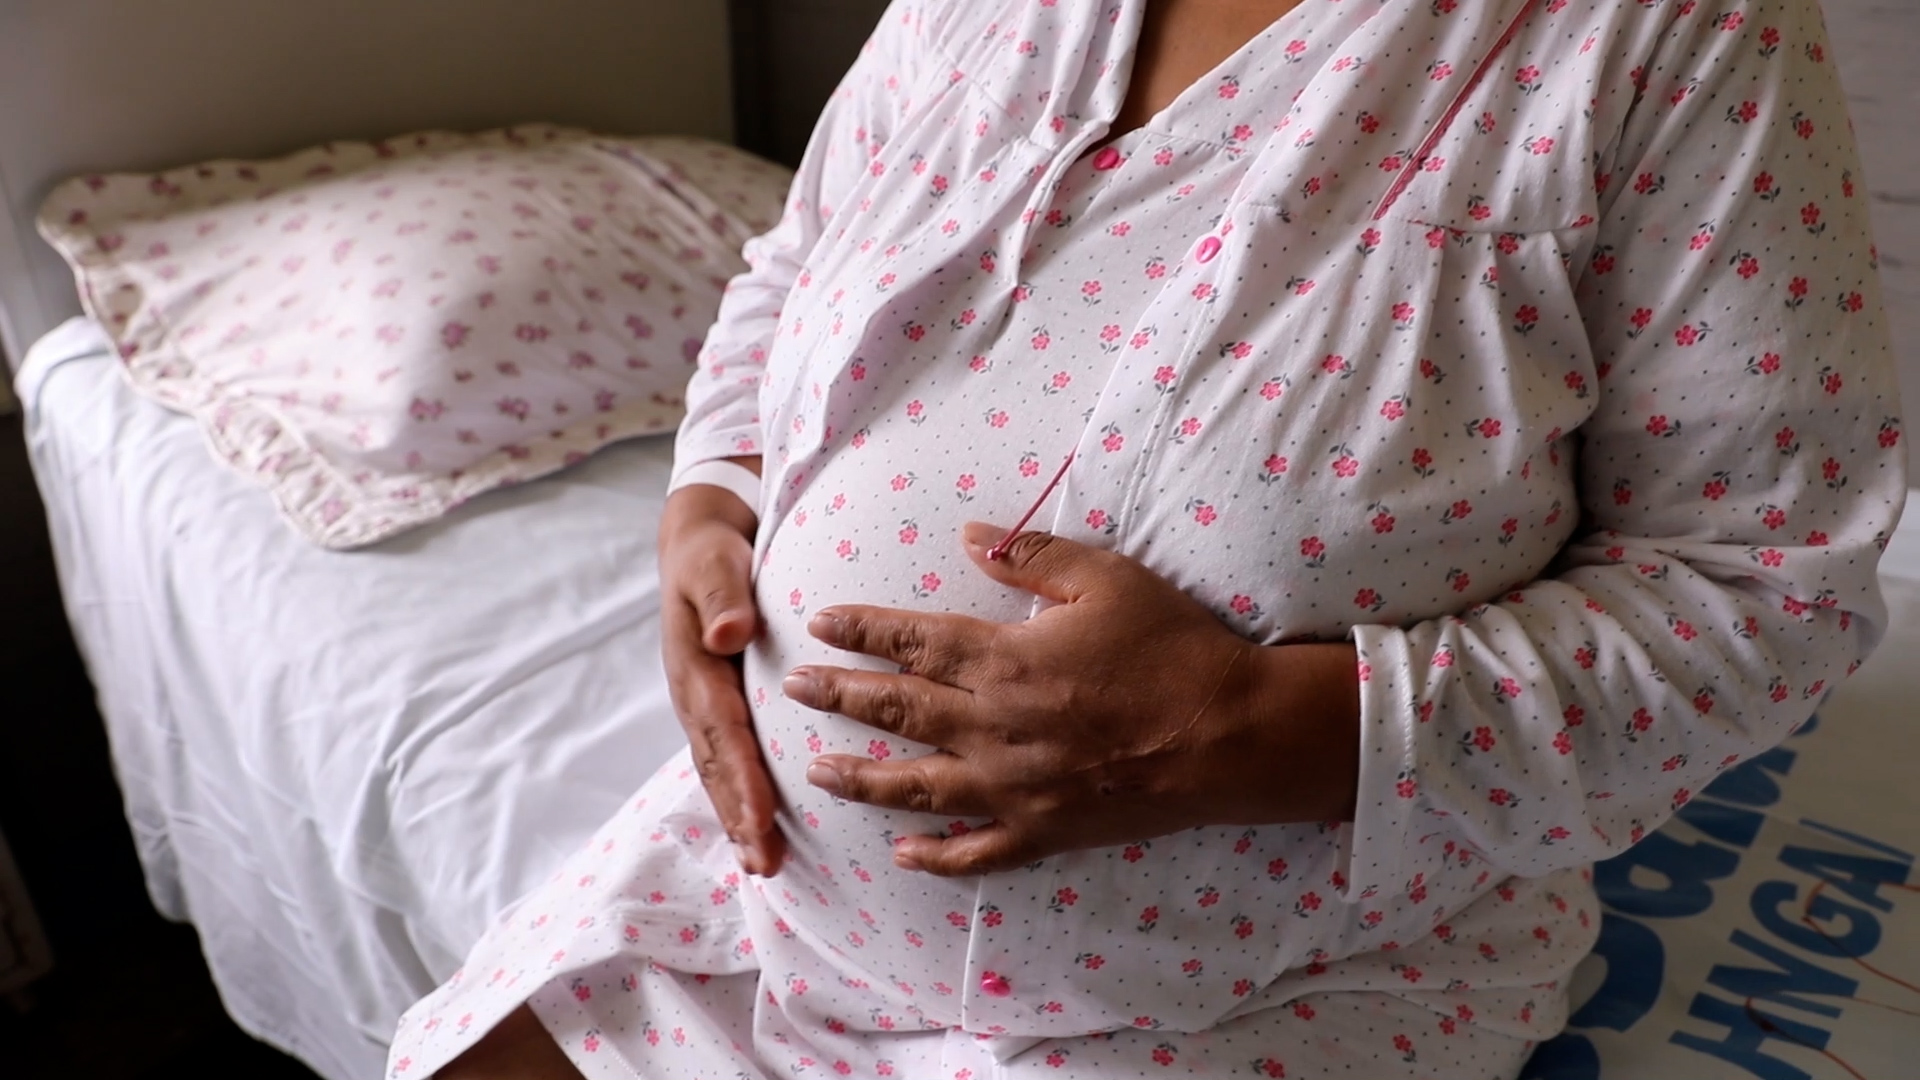 Essalud - EsSalud: Novedoso “Plan Radar” detectará embarazos de riesgo que beneficiará a 700 mil mujeres en edad reproductiva